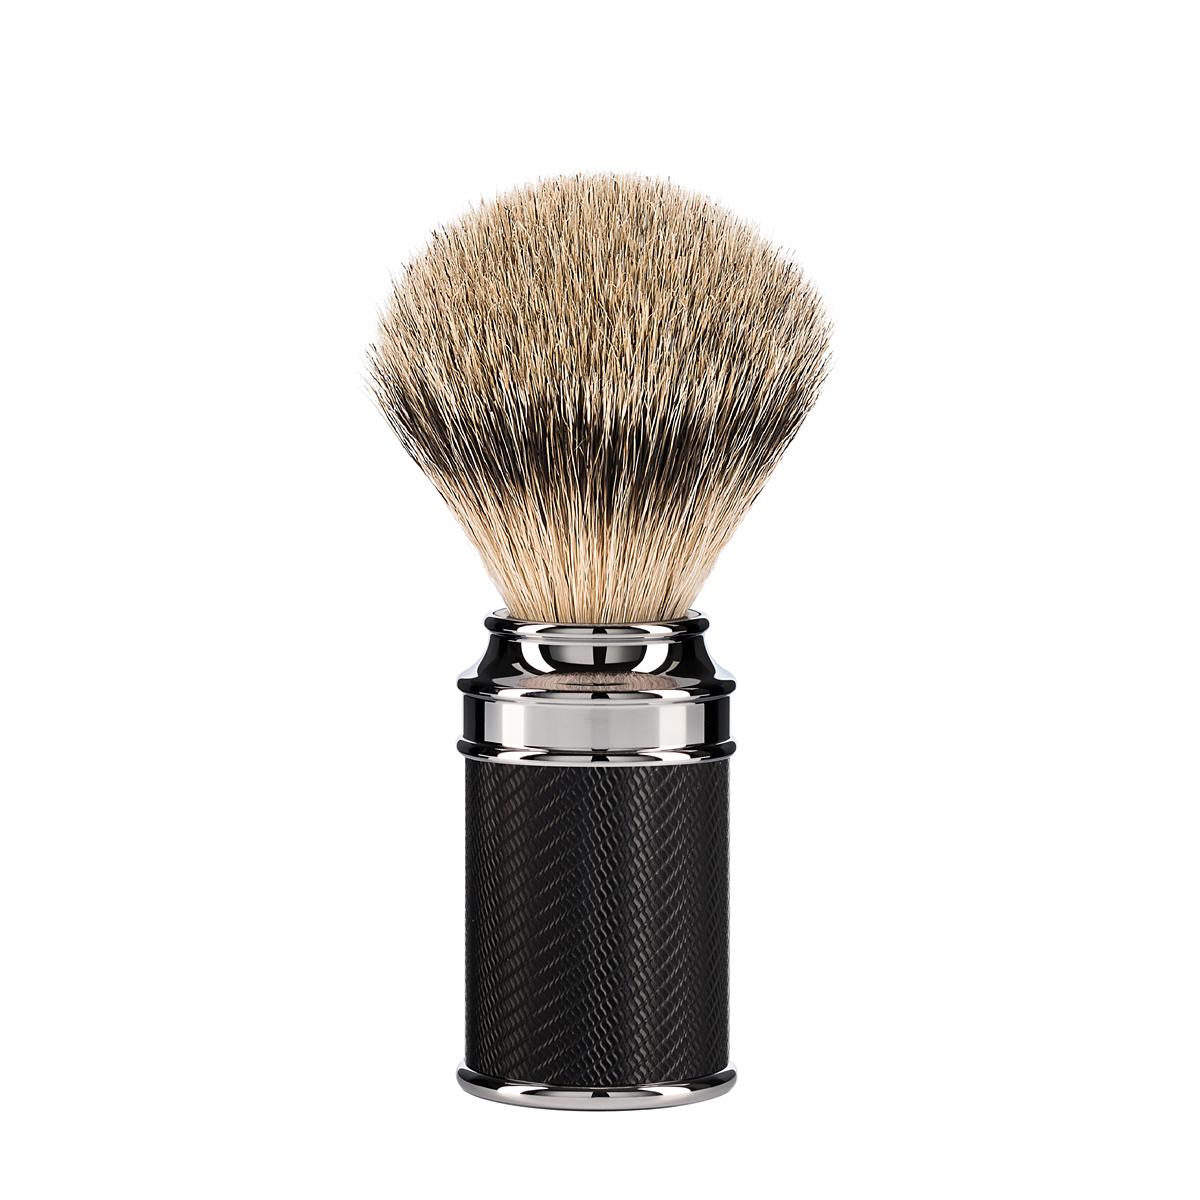 MUHLE TRADITIONAL Black/Chrome Silvertip Badger Shaving Brush